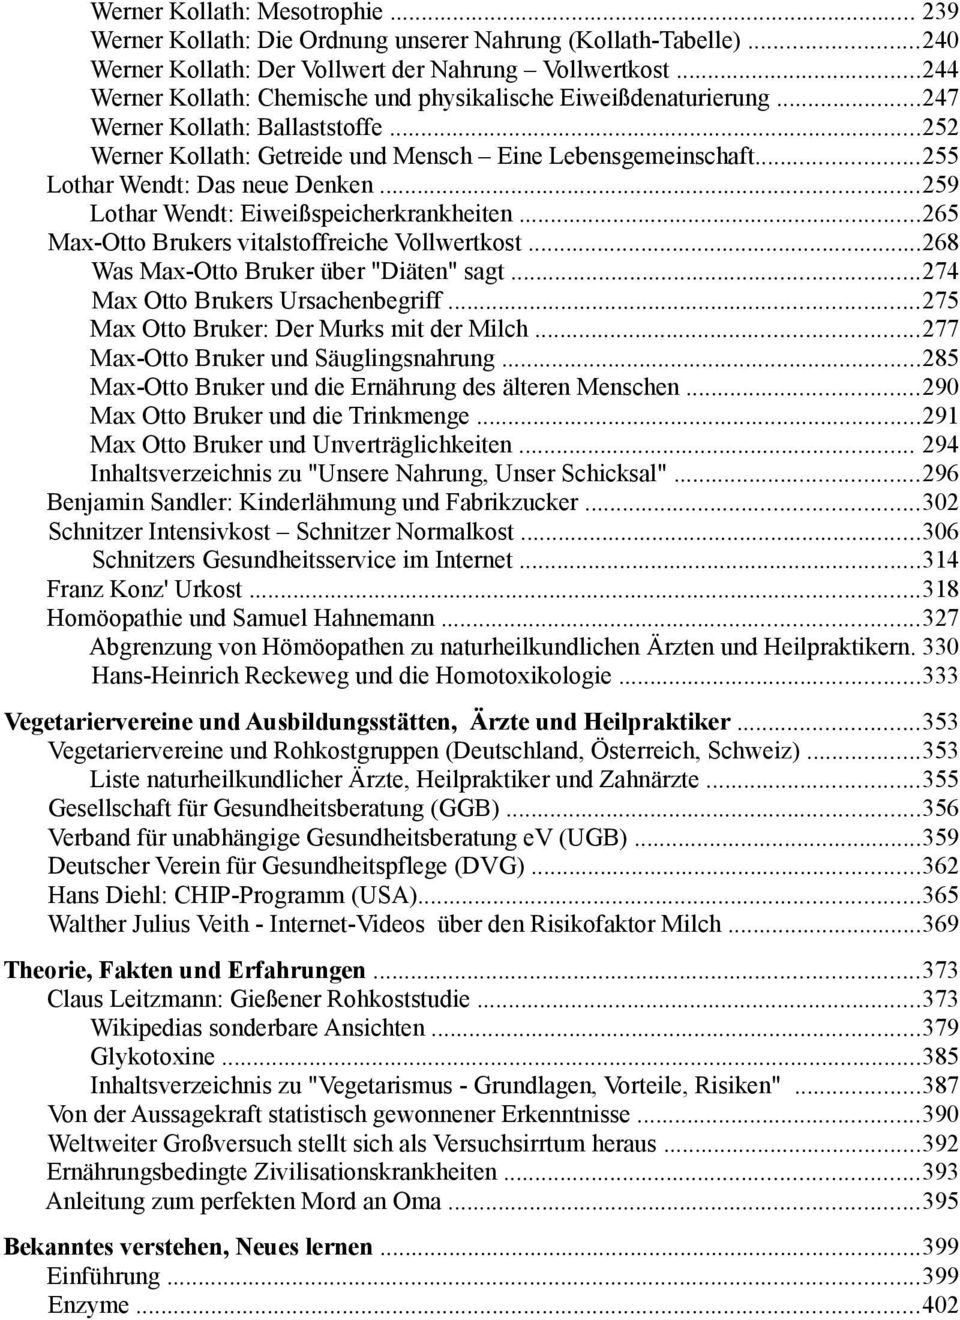 ..255 Lothar Wendt: Das neue Denken...259 Lothar Wendt: Eiweißspeicherkrankheiten...265 Max-Otto Brukers vitalstoffreiche Vollwertkost...268 Was Max-Otto Bruker über "Diäten" sagt.